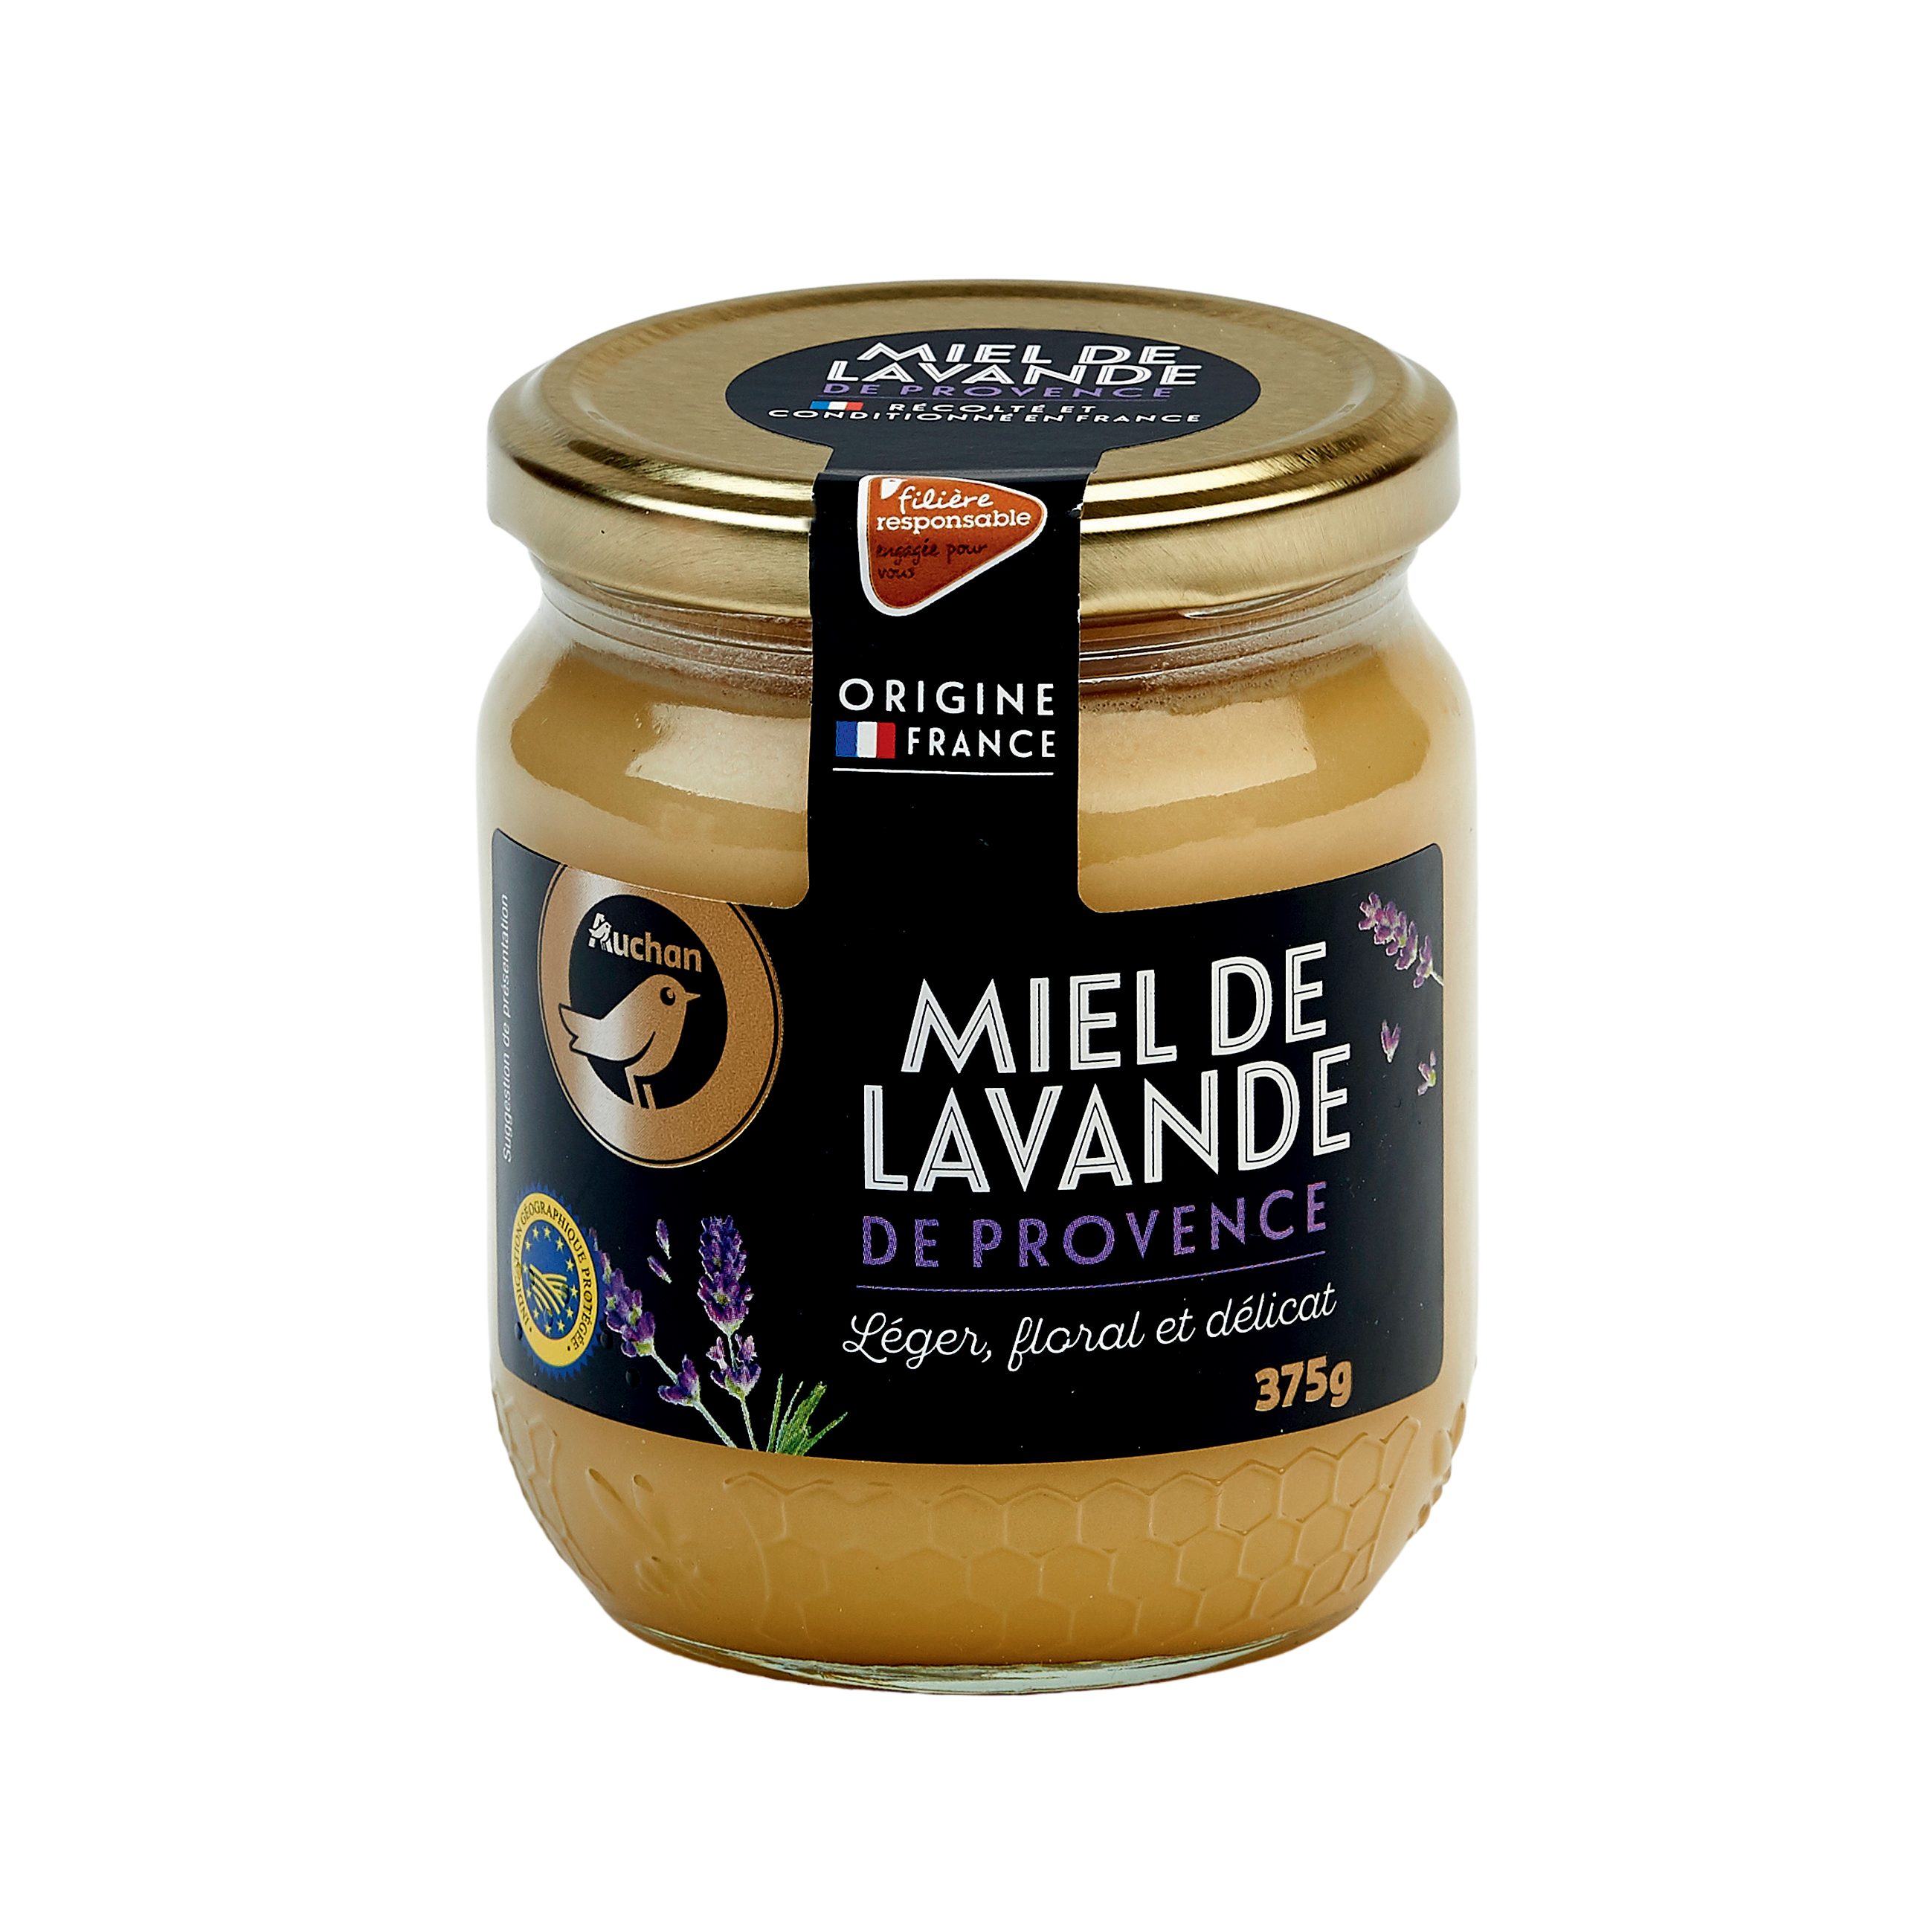 Miel de Lavande de Provence Label Rouge BIO (crémeux) - Les Comtes